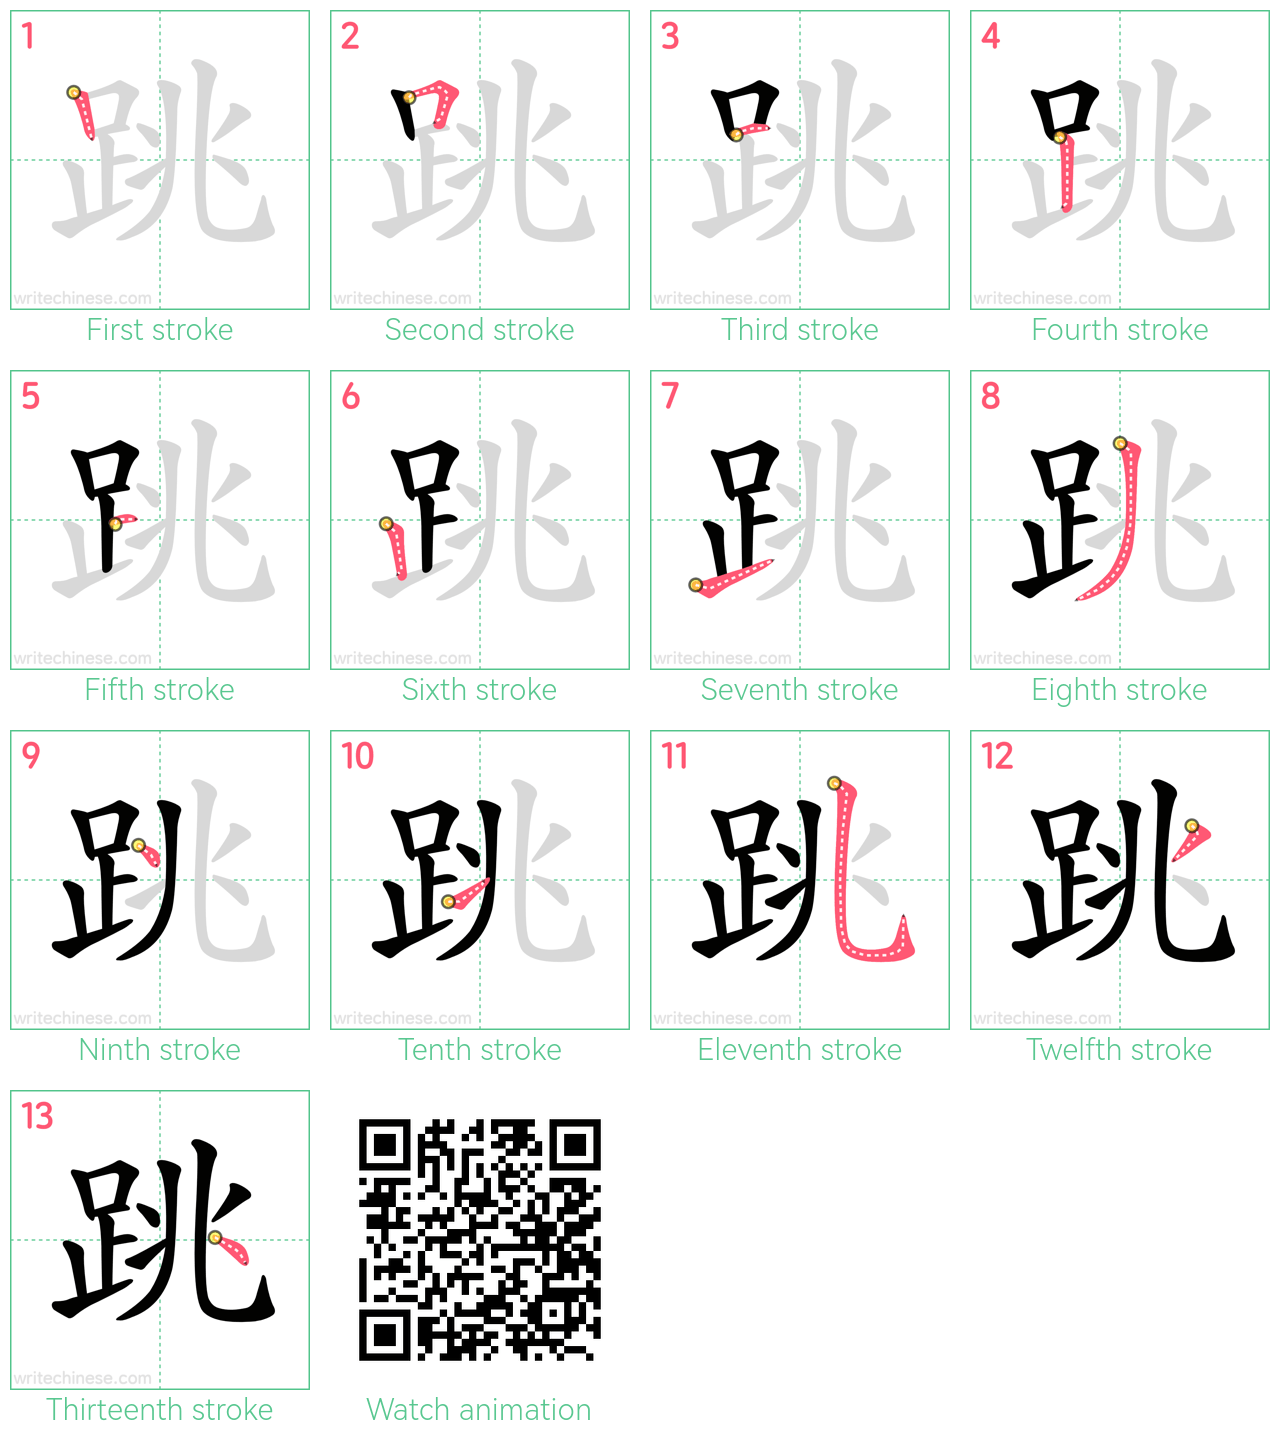 跳 step-by-step stroke order diagrams